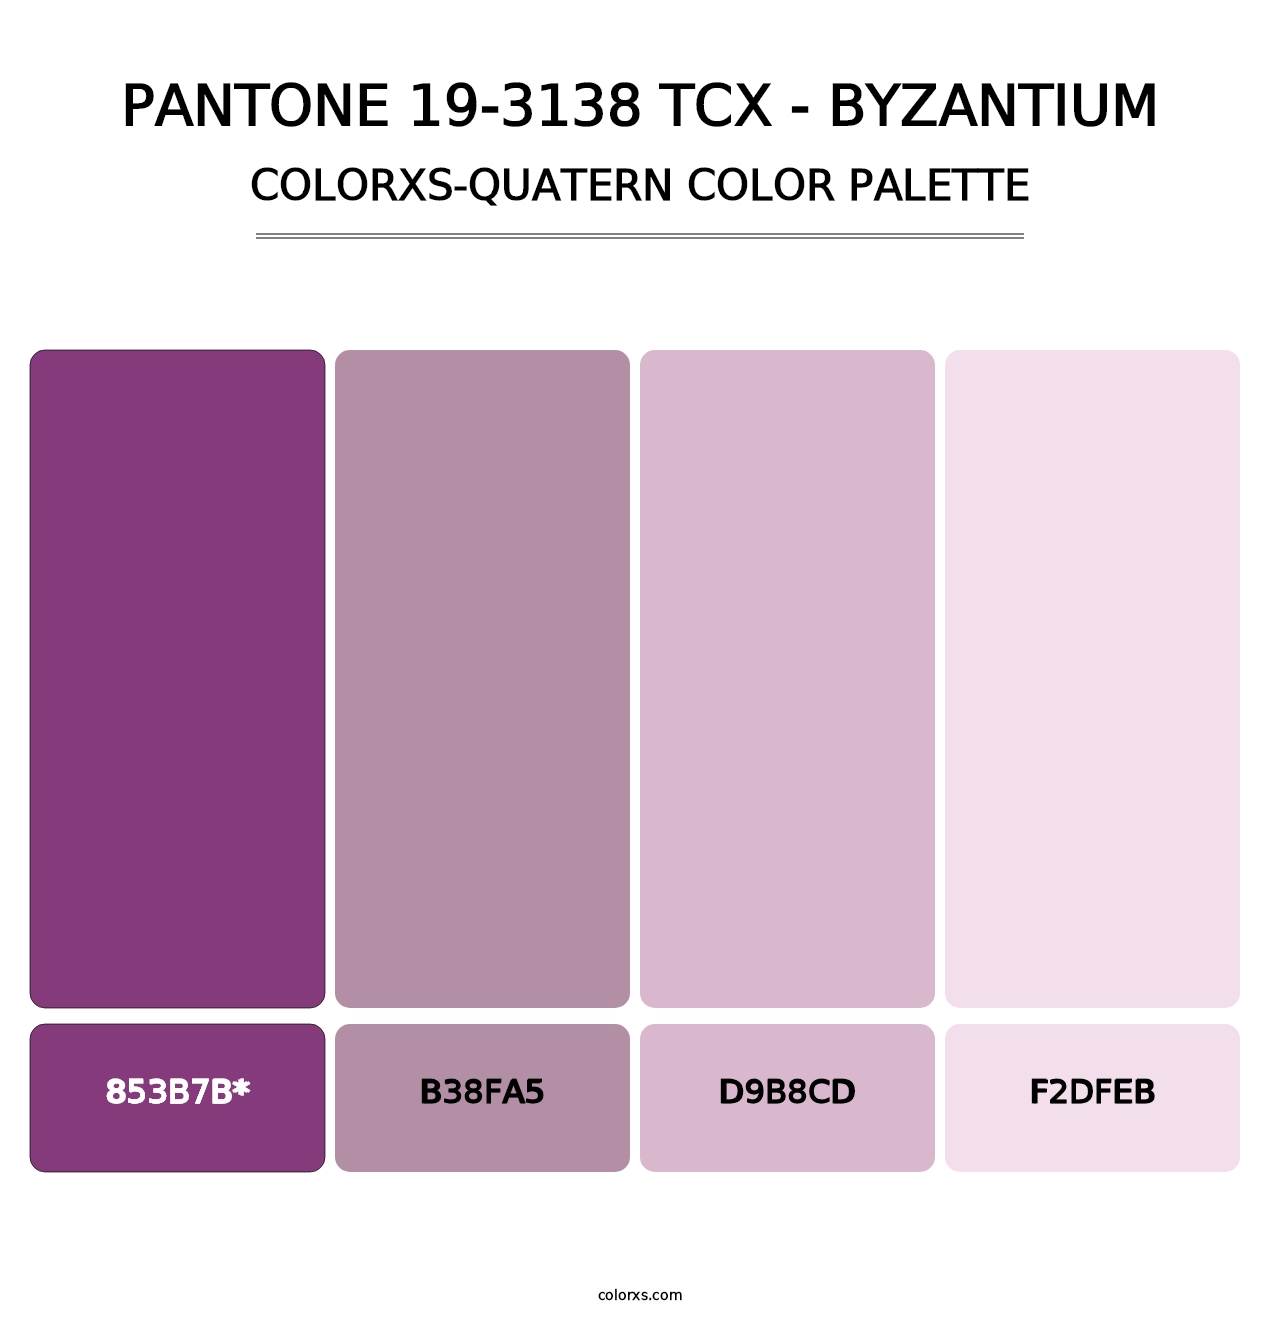 PANTONE 19-3138 TCX - Byzantium - Colorxs Quatern Palette